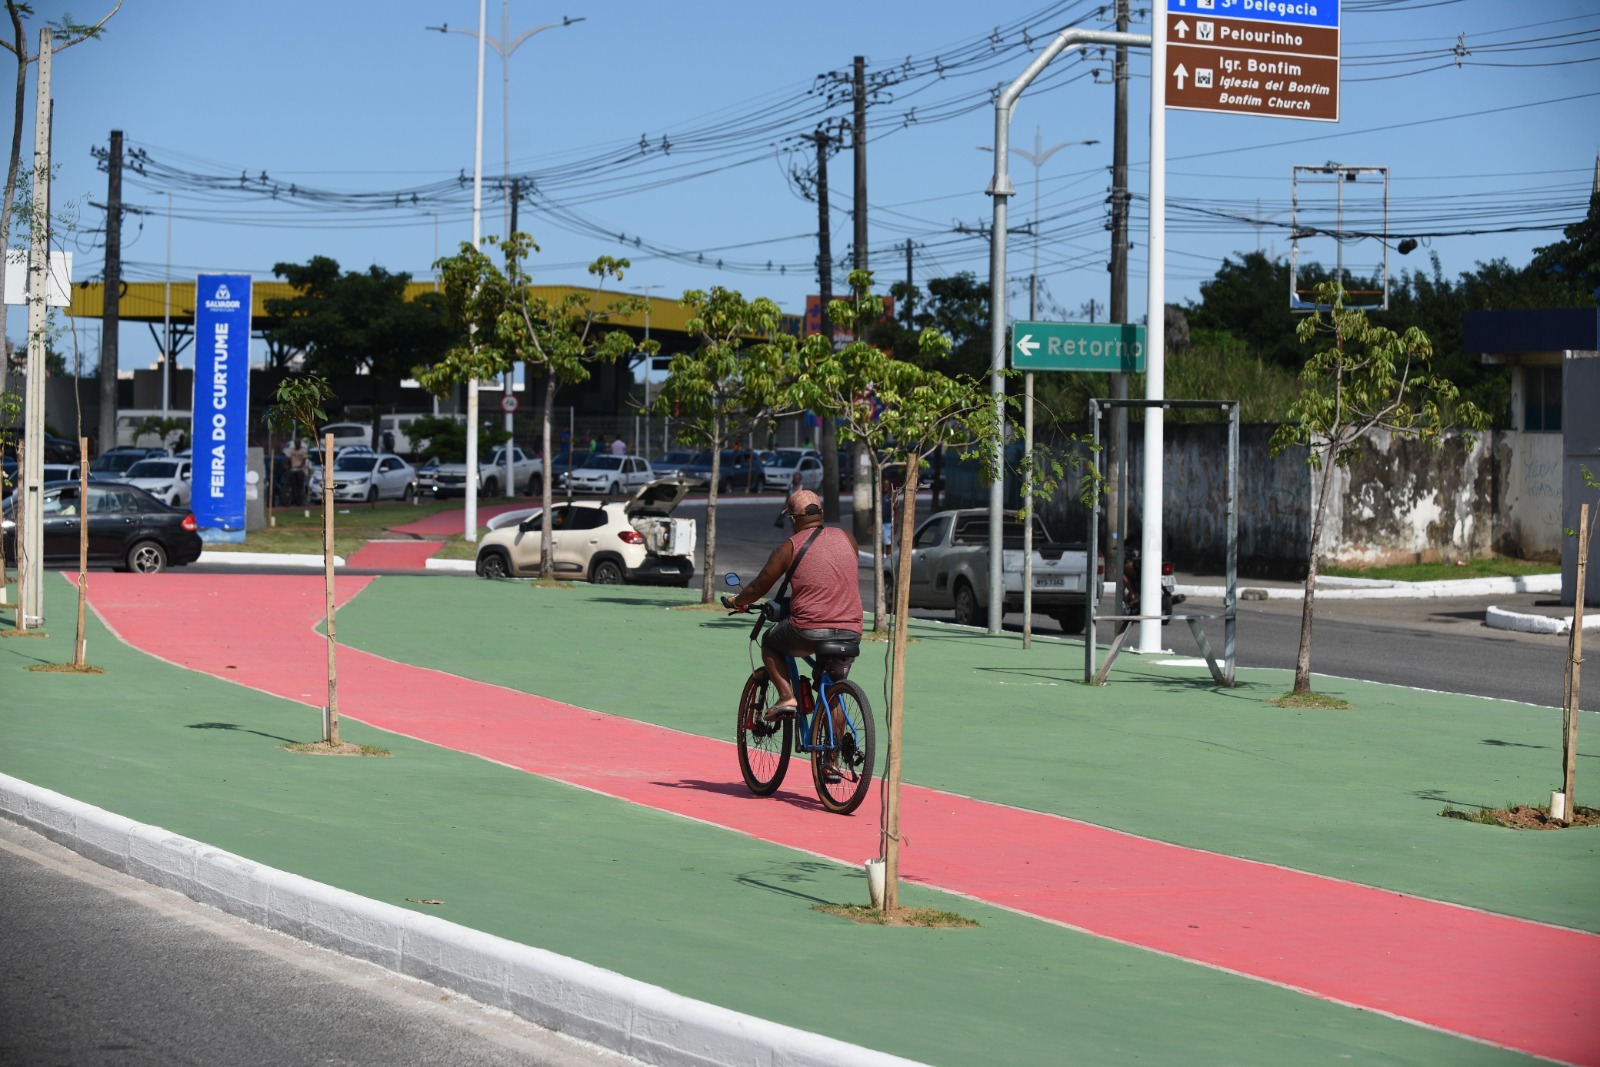 Plano prevê mais de R$ 100 mi para ampliação da rede cicloviária de Salvador em dez anos